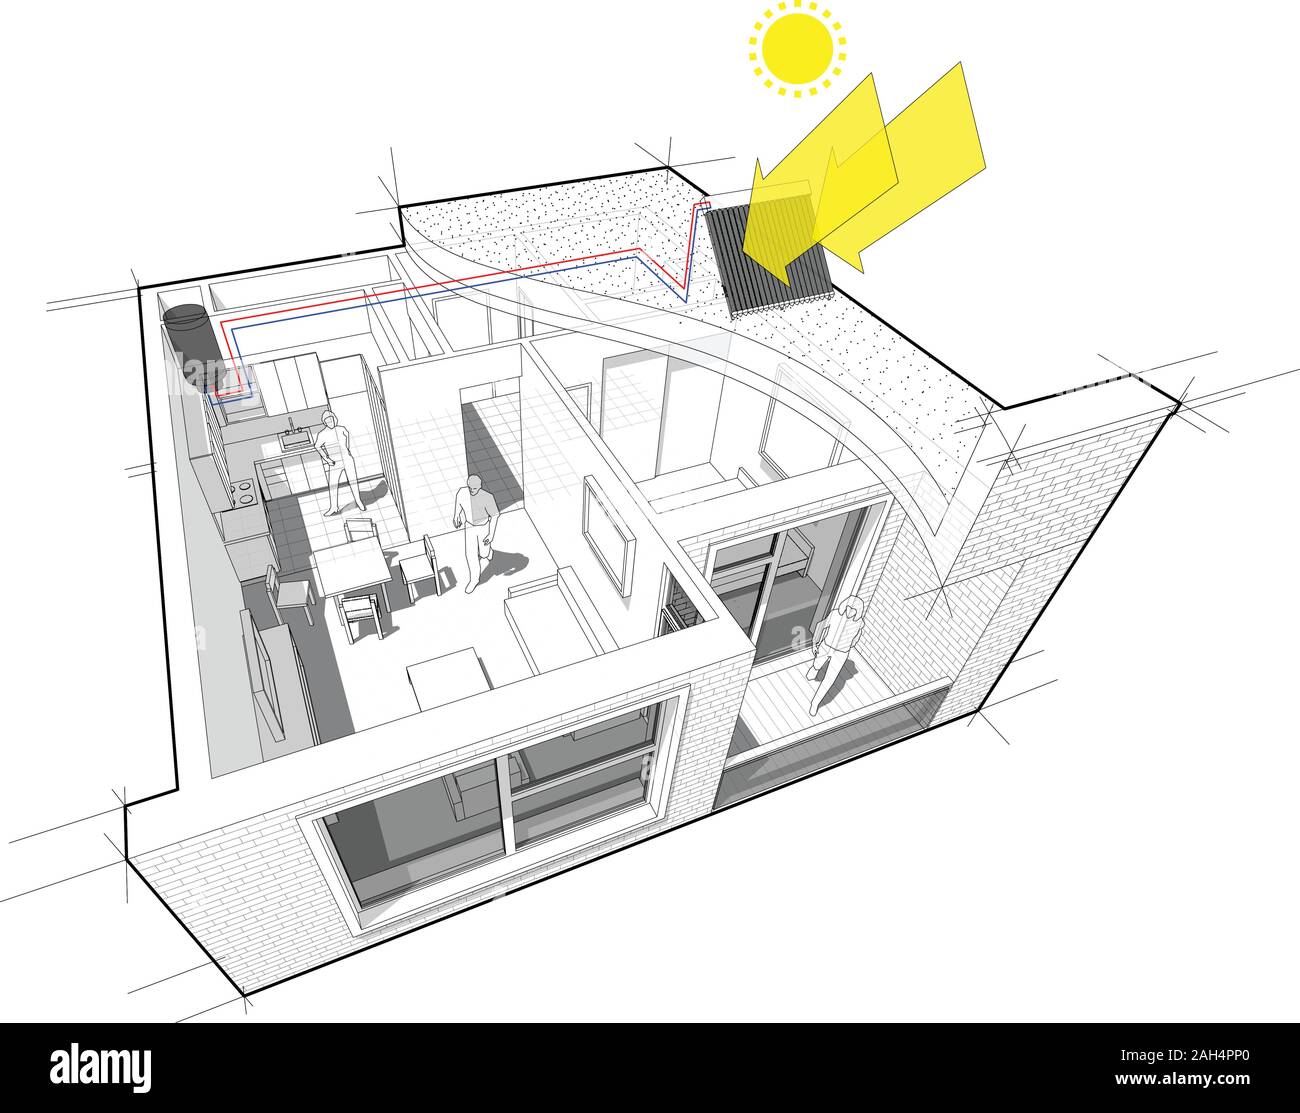 Perspektive Innenansicht der ein Apartment mit einem Schlafzimmer komplett mit mit zusätzlichen solare Warmwasserbereitung Sonnenkollektoren auf dem Dach eingerichtet Stock Vektor